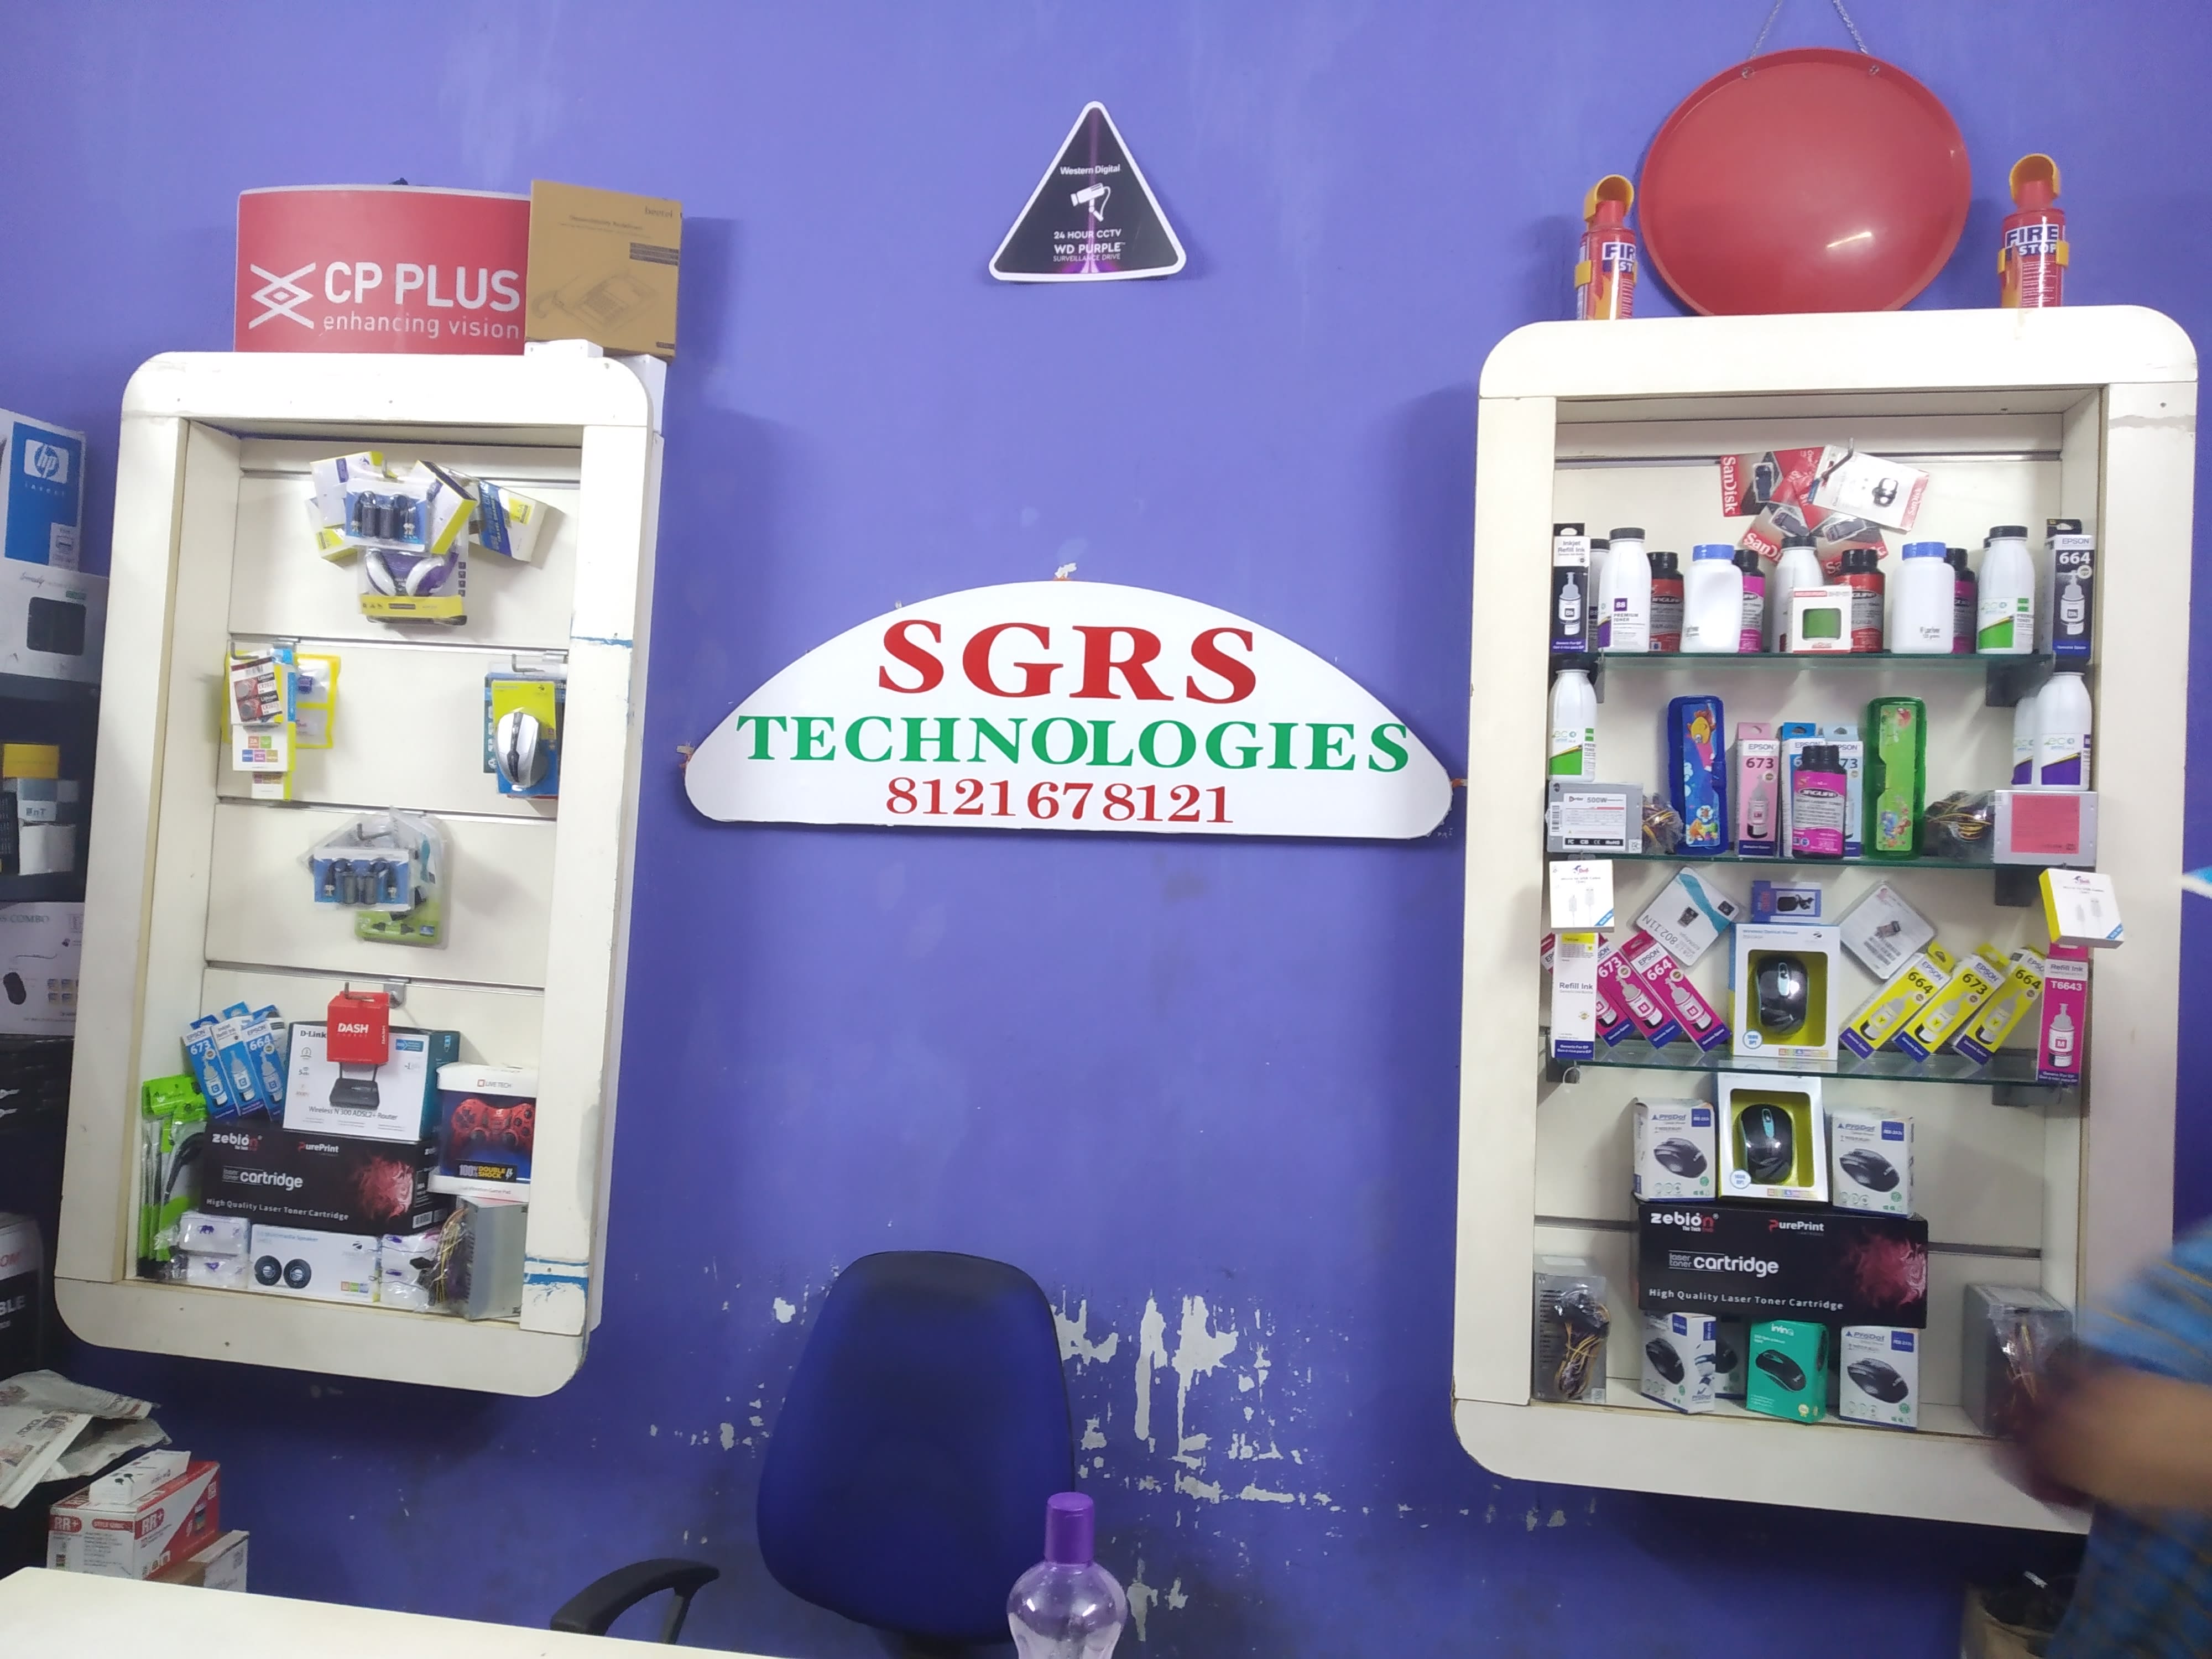 SGRS TECHNOLOGIES